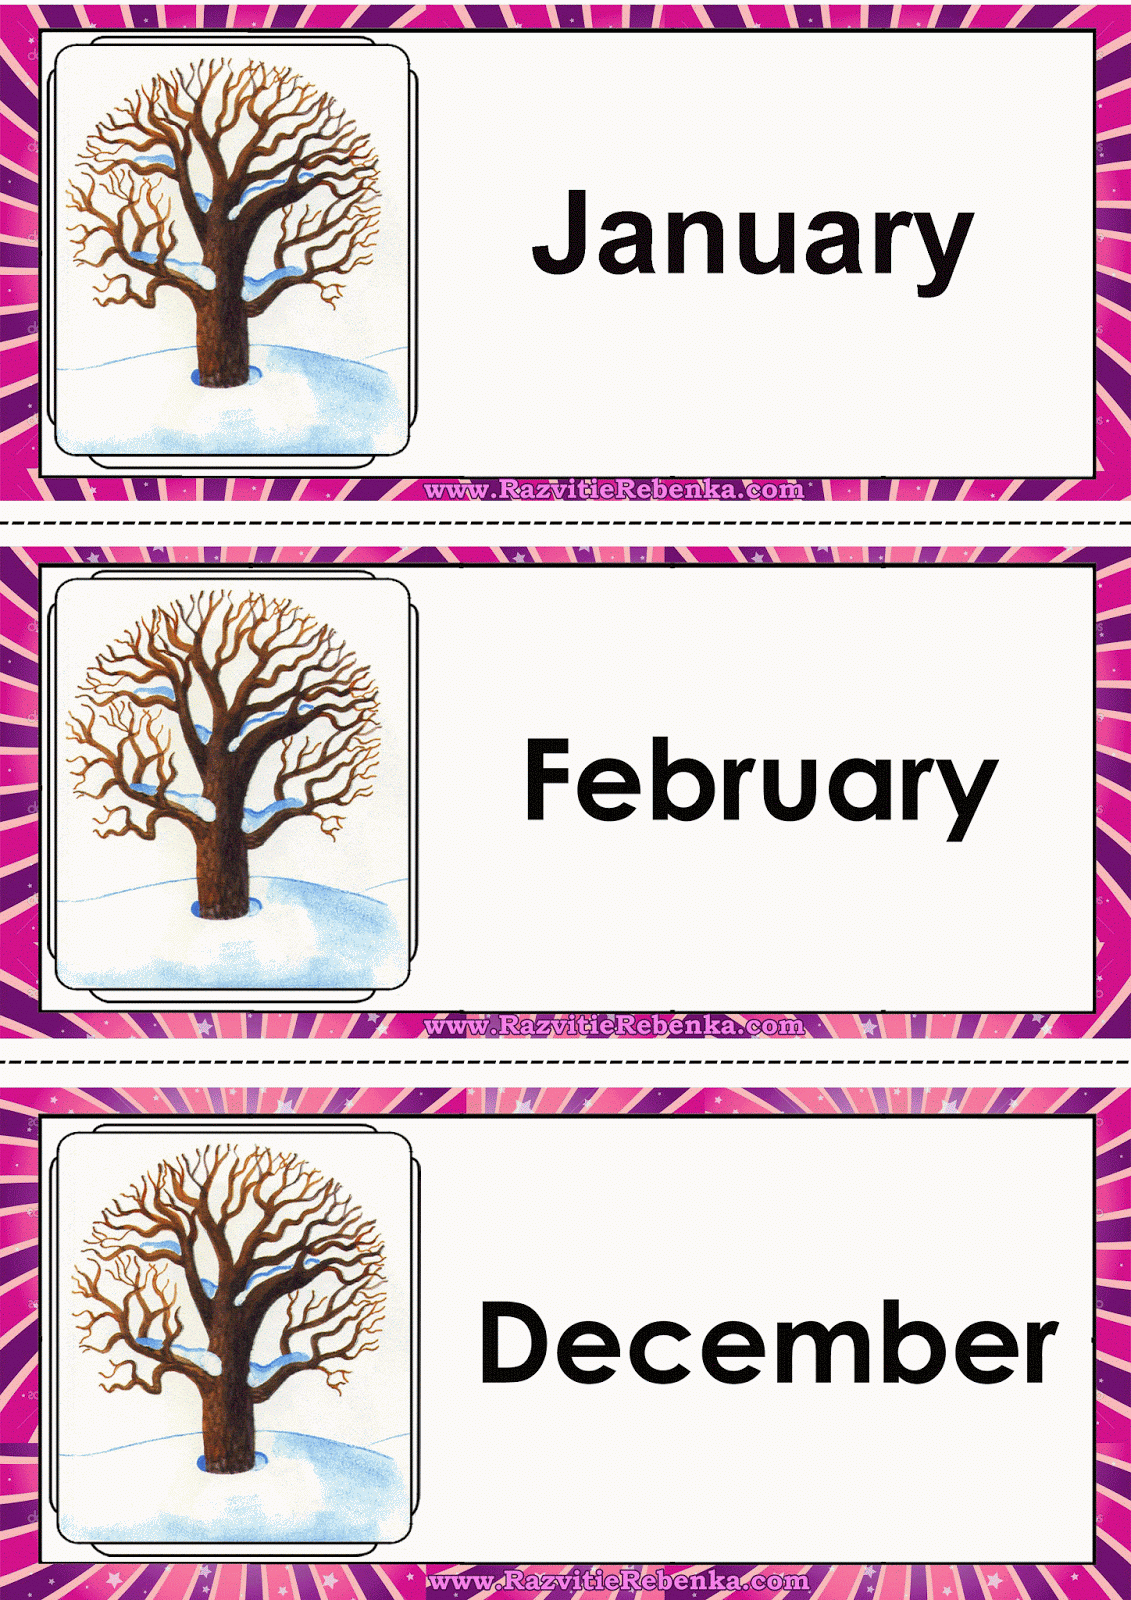 February is month of the year. Месяца на английском. Зимние месяцы на английском. Месяца на английском карточки. Карточки по английскому месяцы.